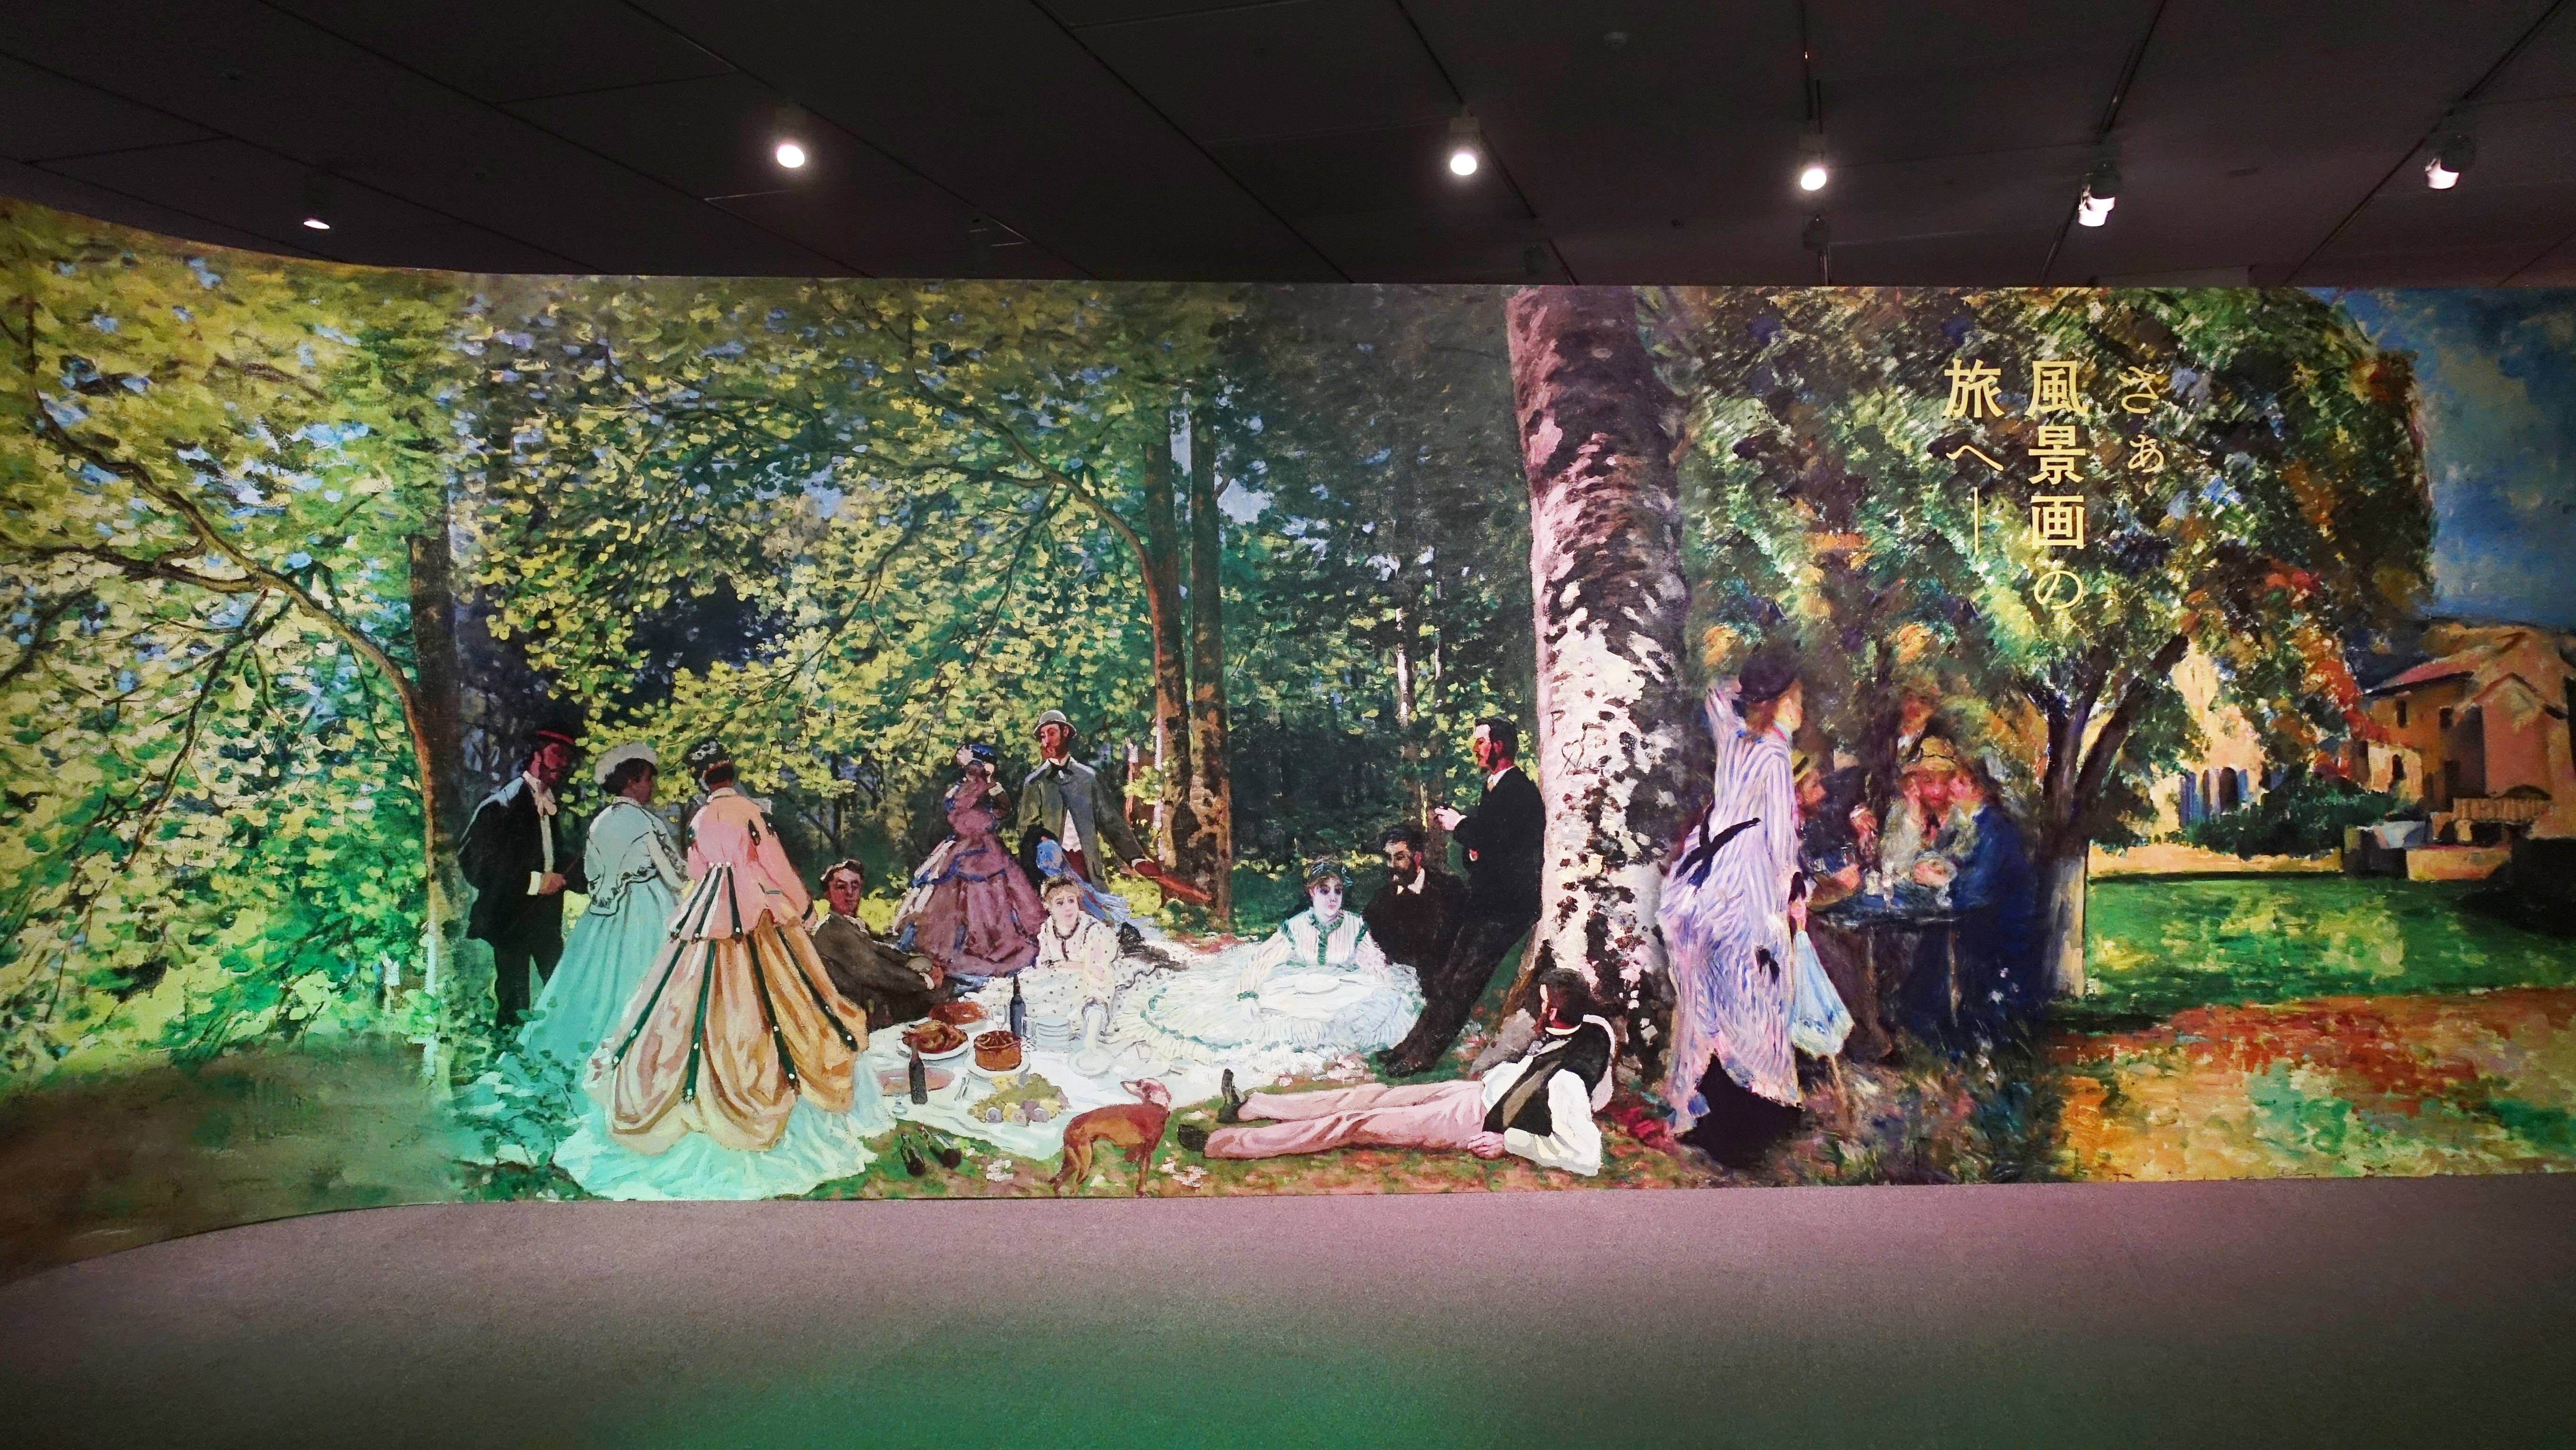 日本東京都美術館【普希金博物館繪畫特展-法國風景畫的旅行】展場現場挪用莫內《草地上的午餐》作品為主視覺。